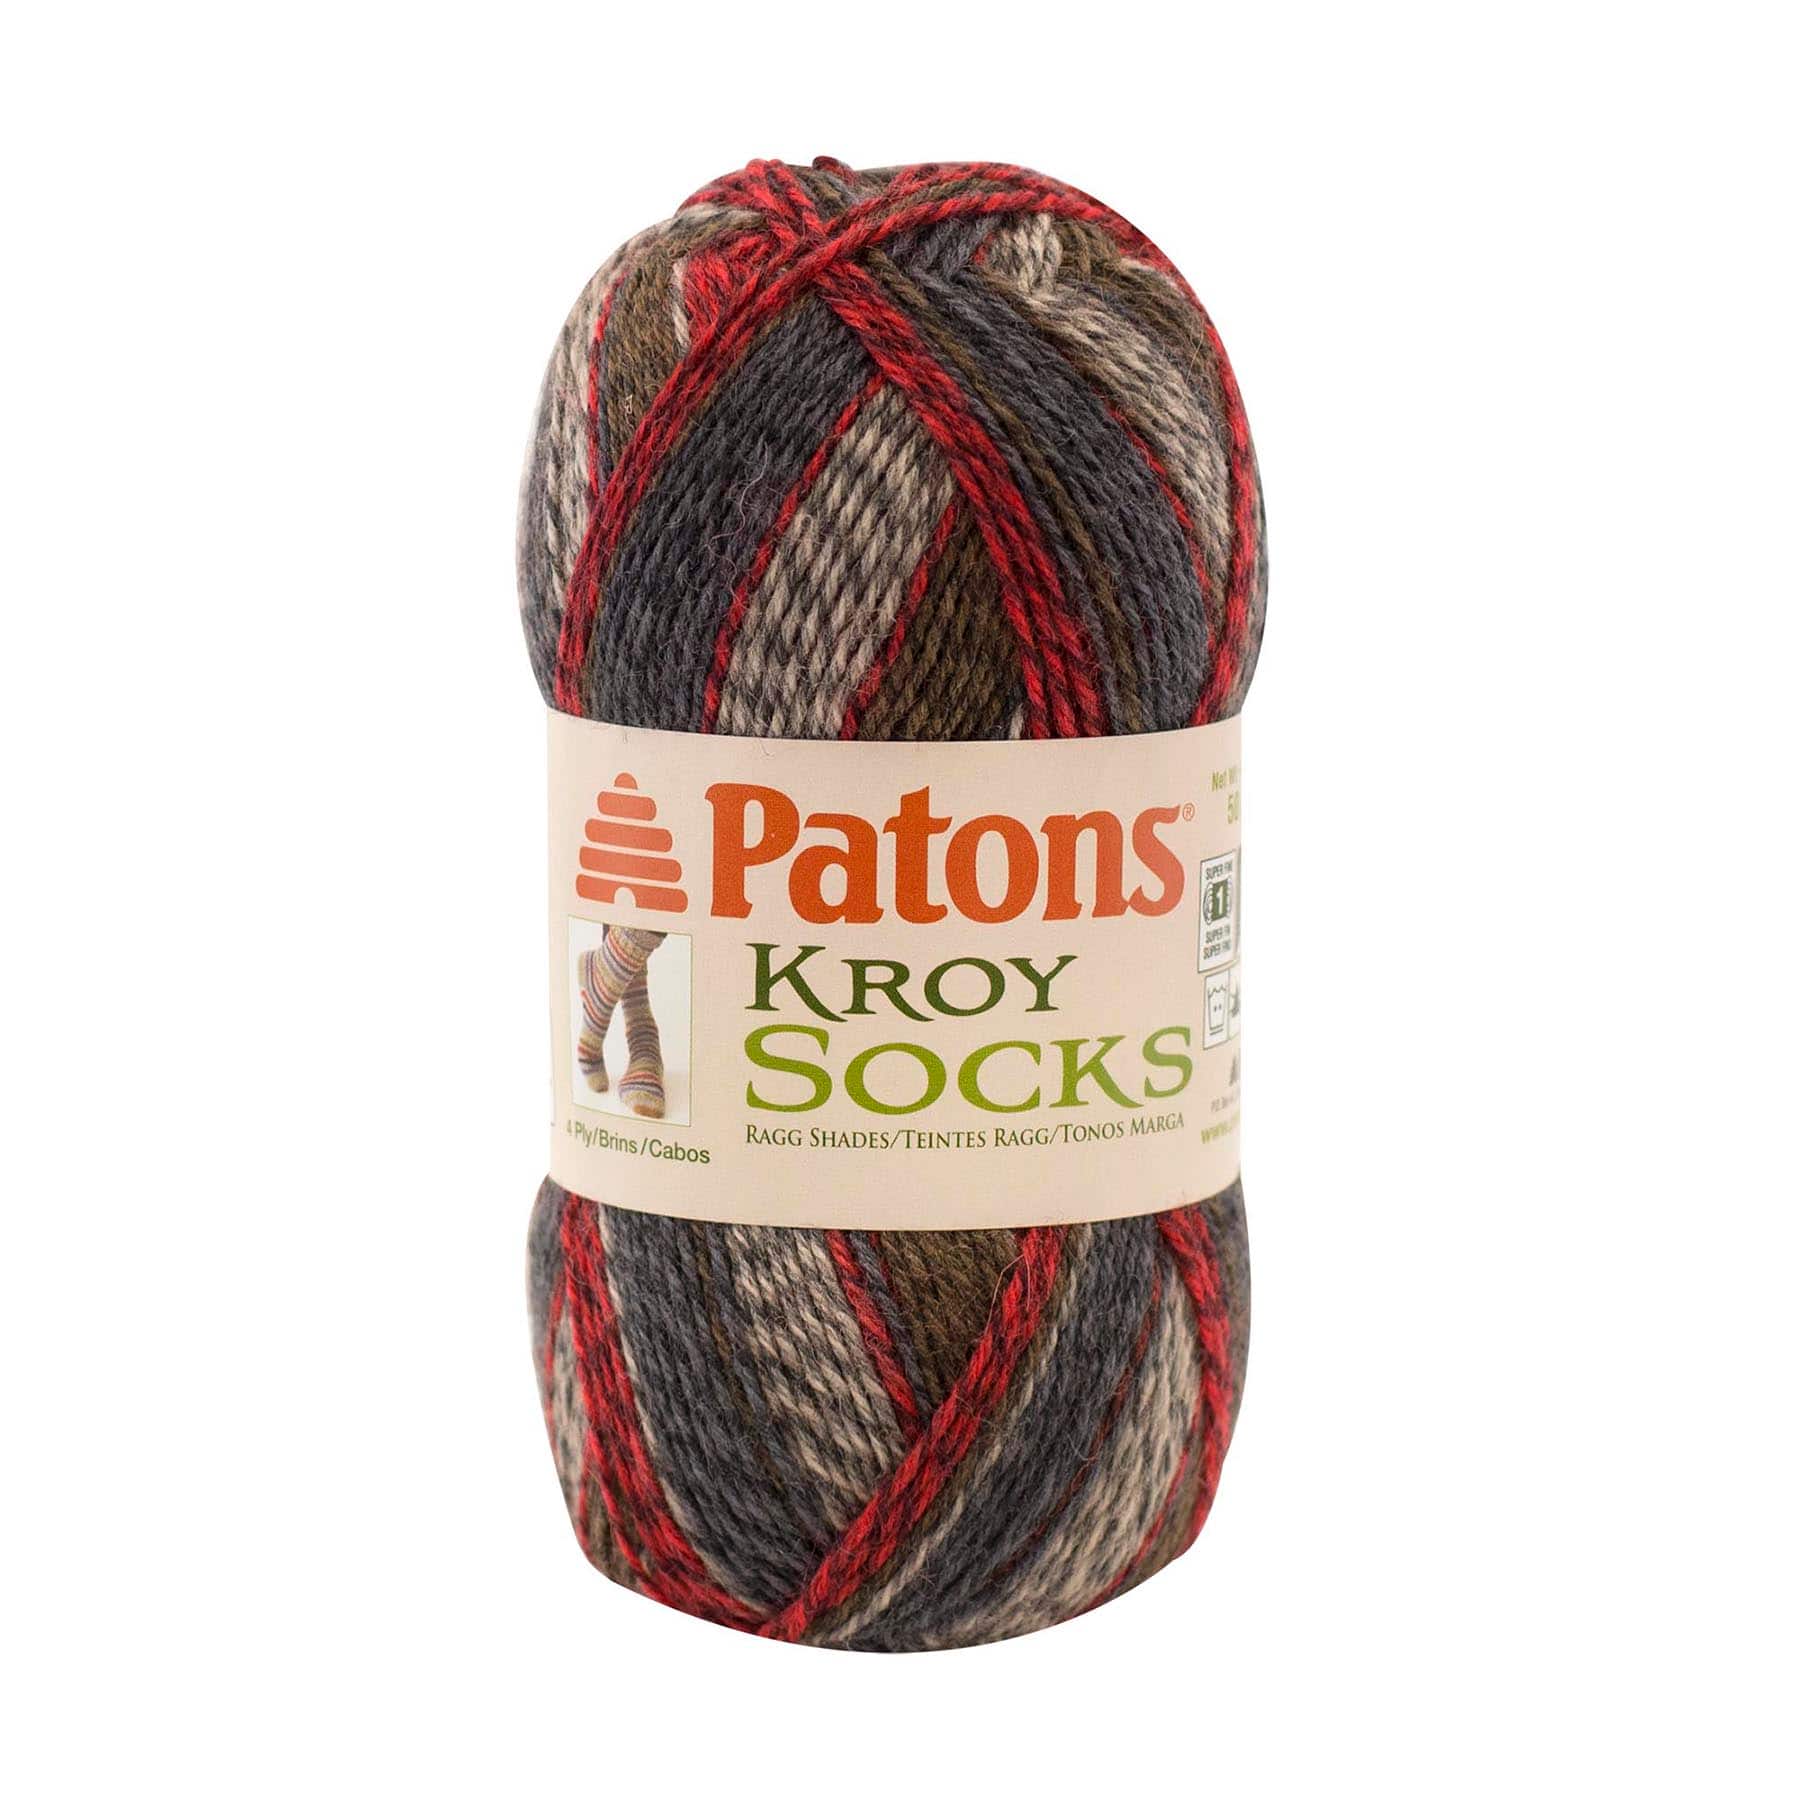 Patons&#xAE; Kroy Socks Yarn